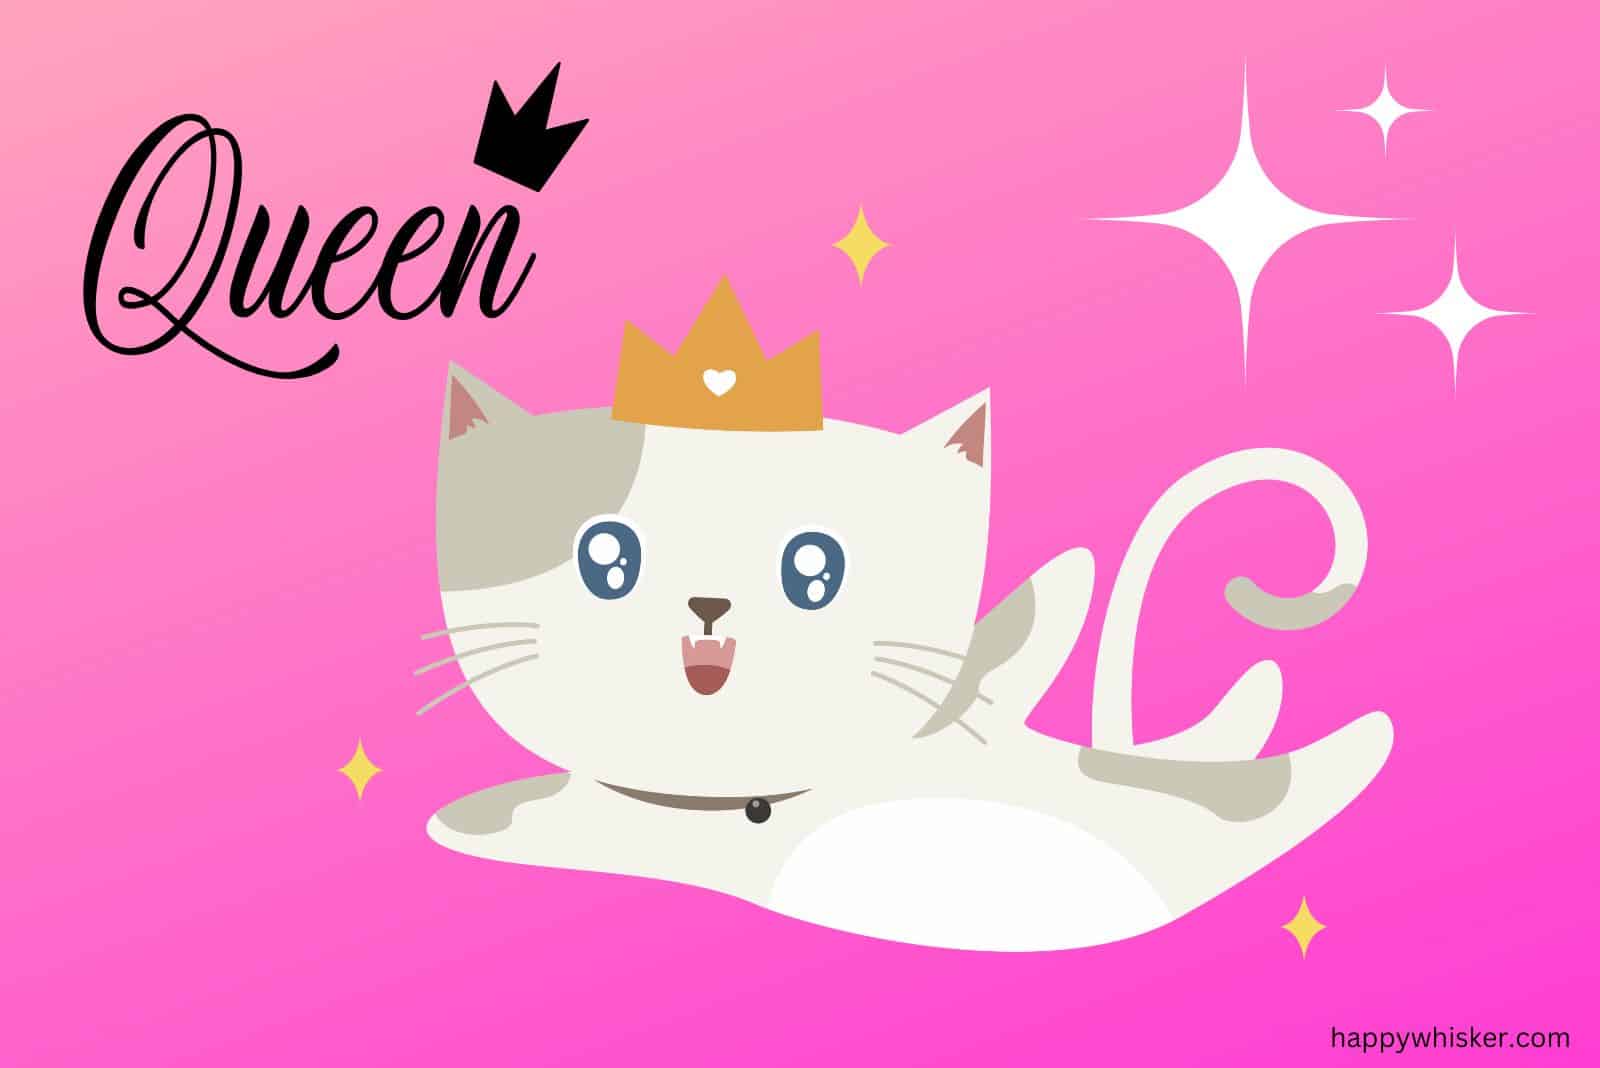 queen cat with tiara